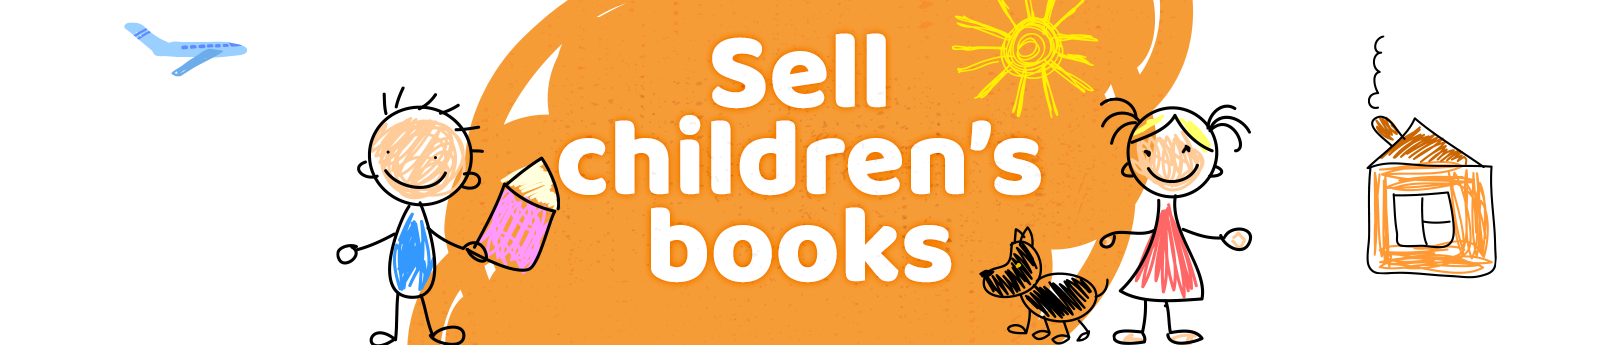 Sell children’s books